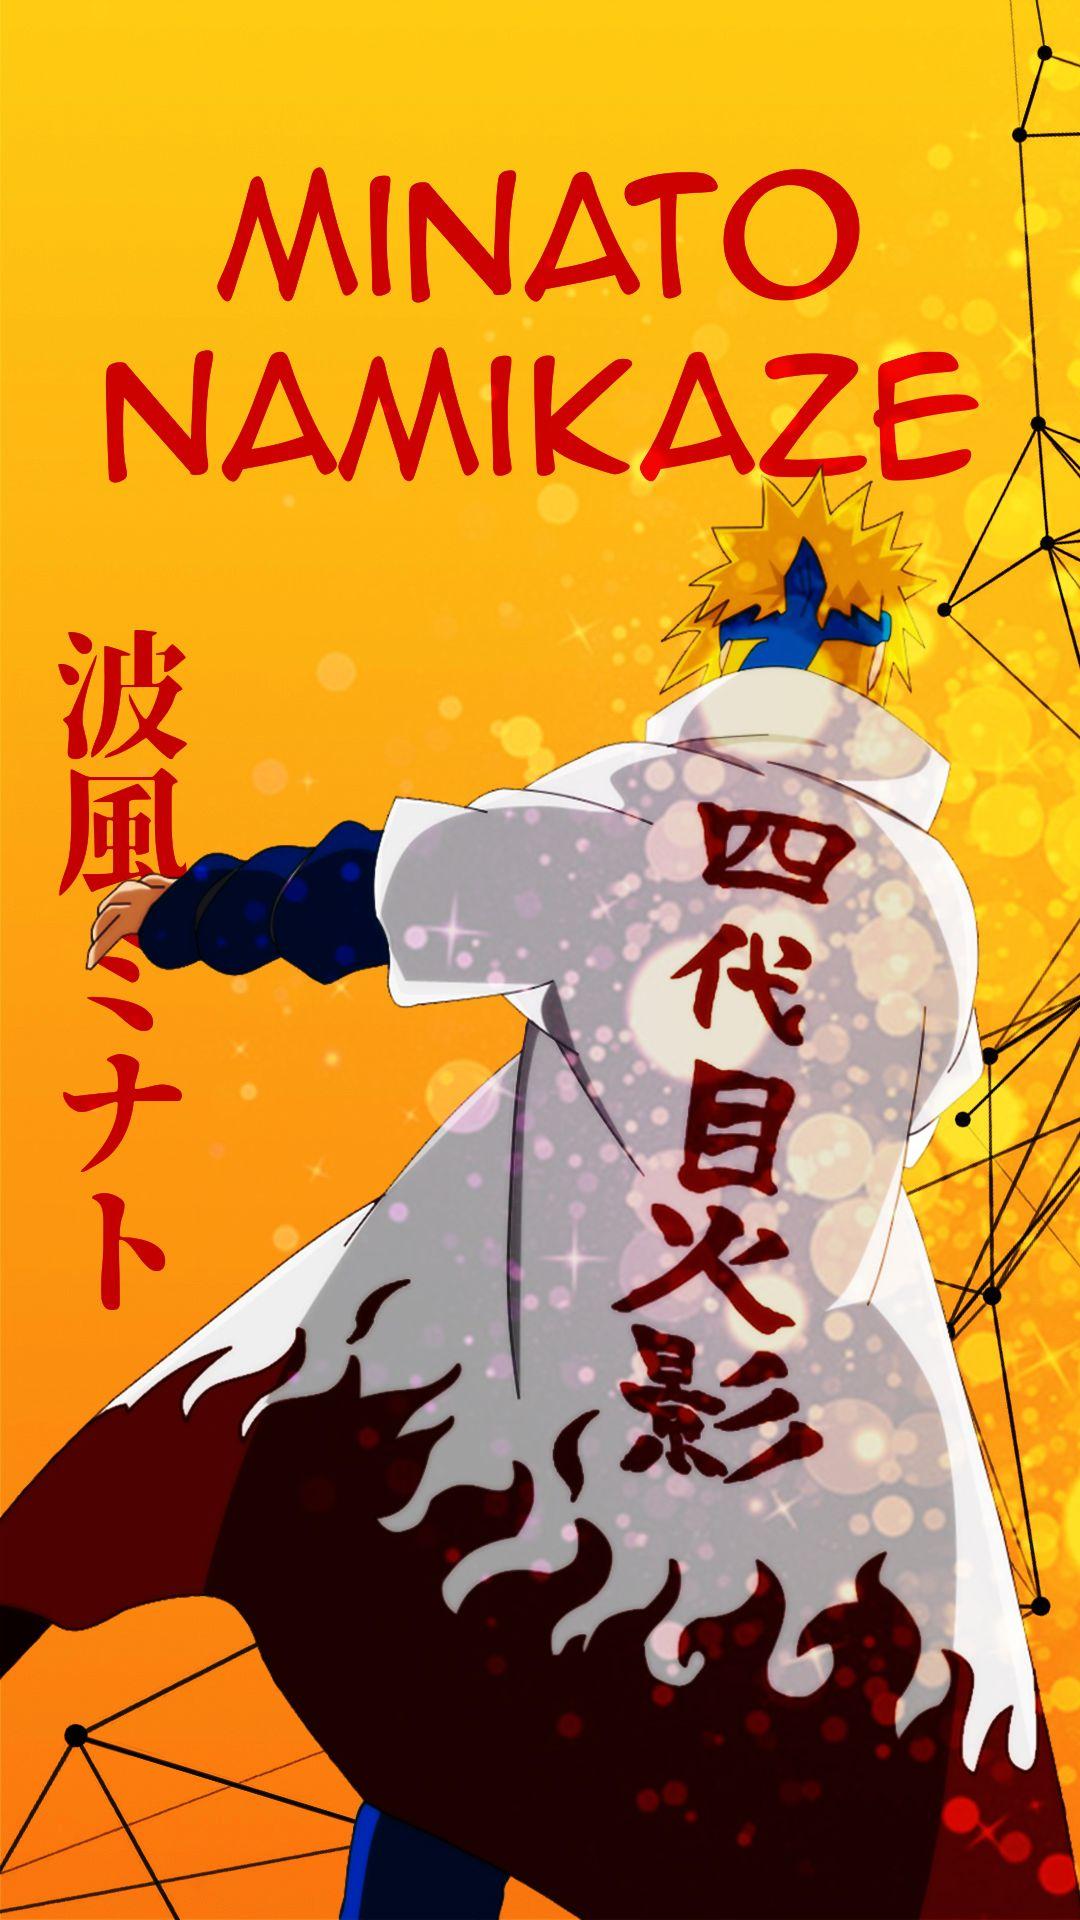 Minato Namikaze. Naruto Shippuden. Anime Wallpaper #anime